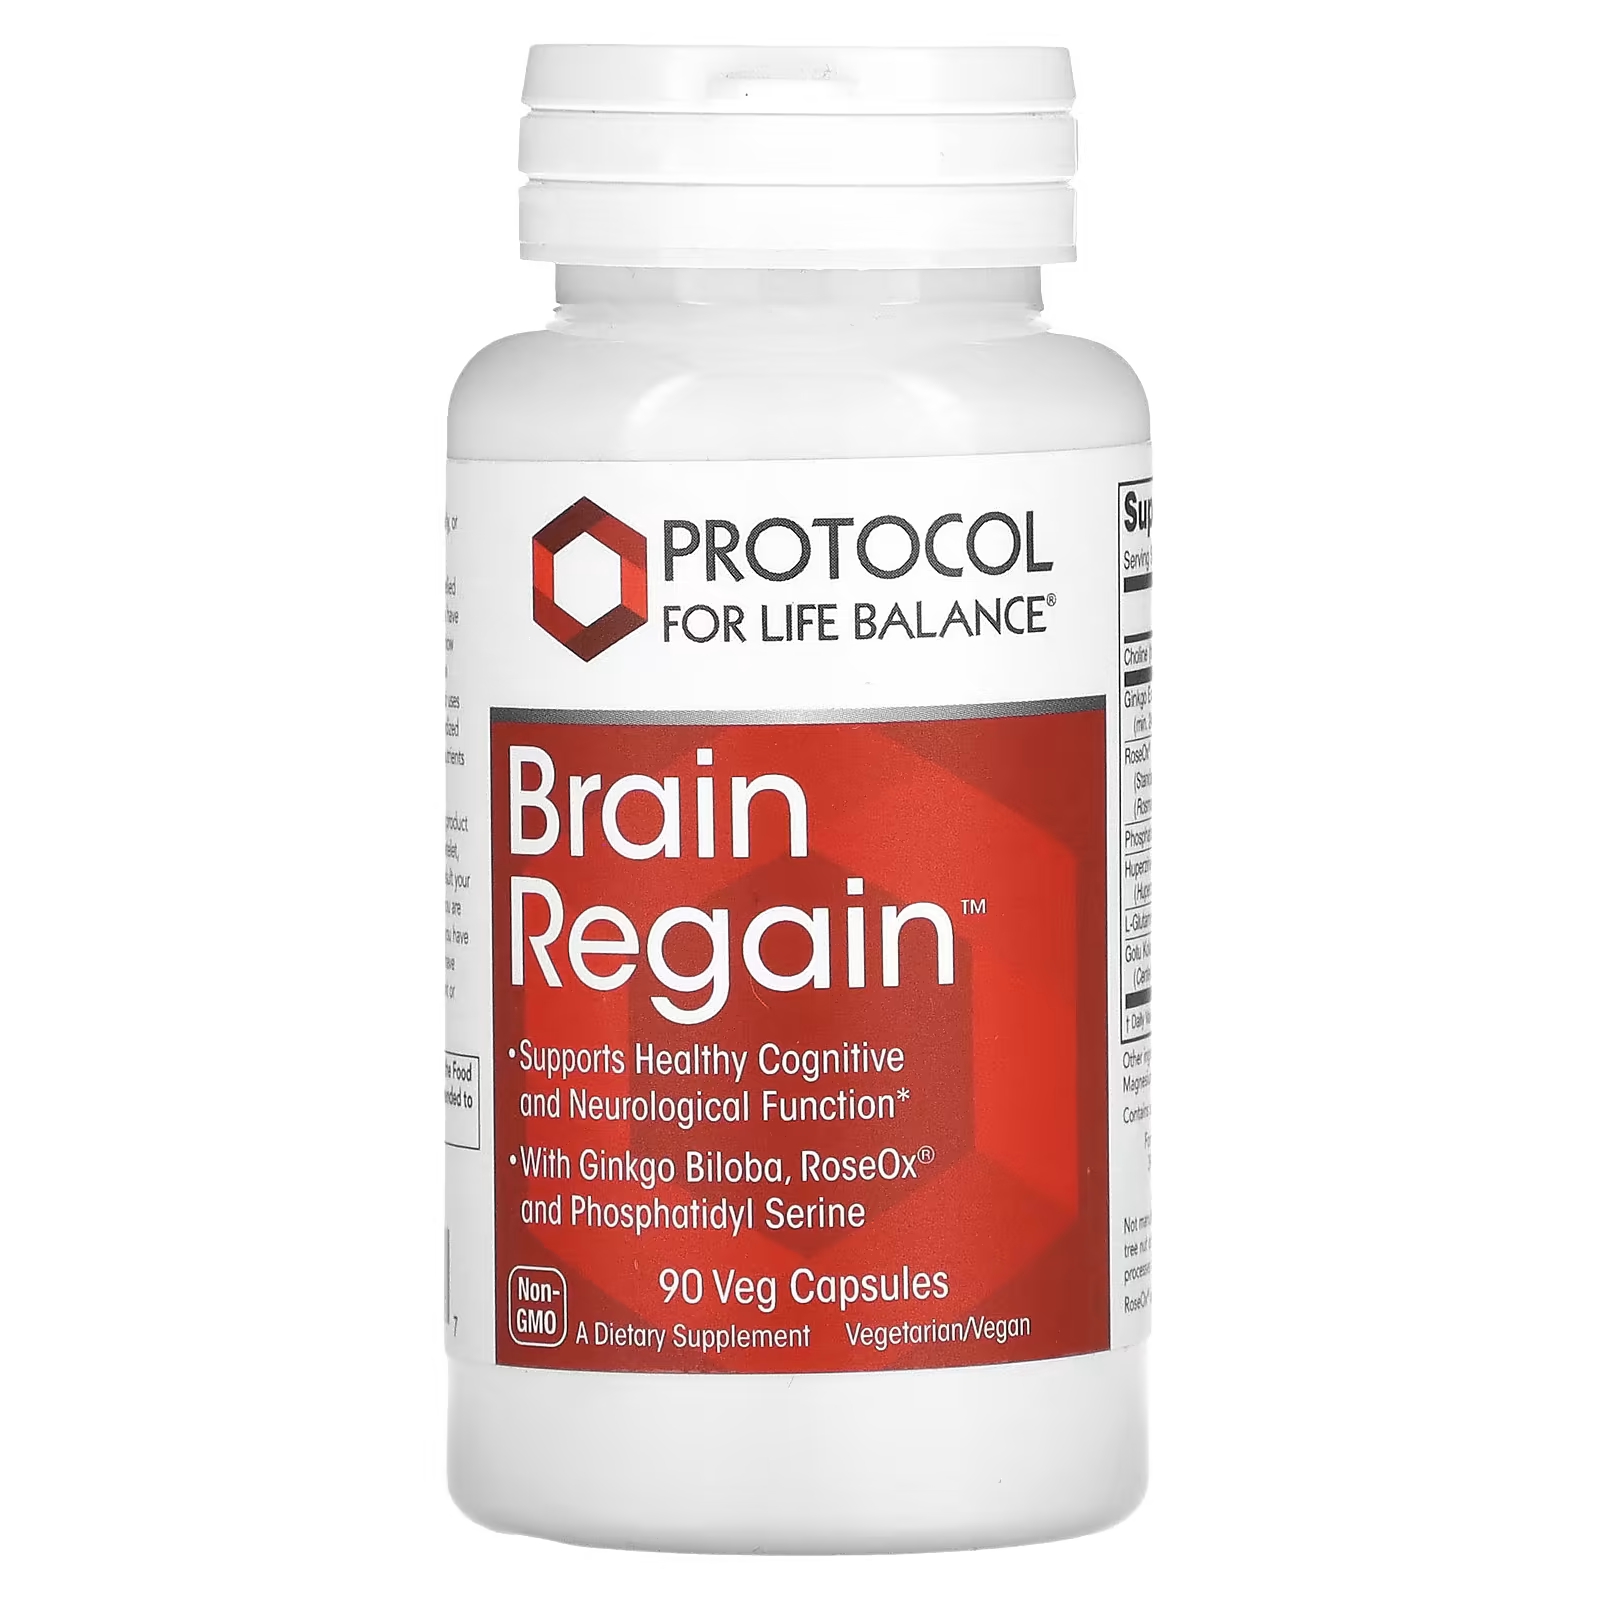 Пищевая добавка Protocol for Life Balance Brain Regain, 90 капсул гинкго билоба фастигиата